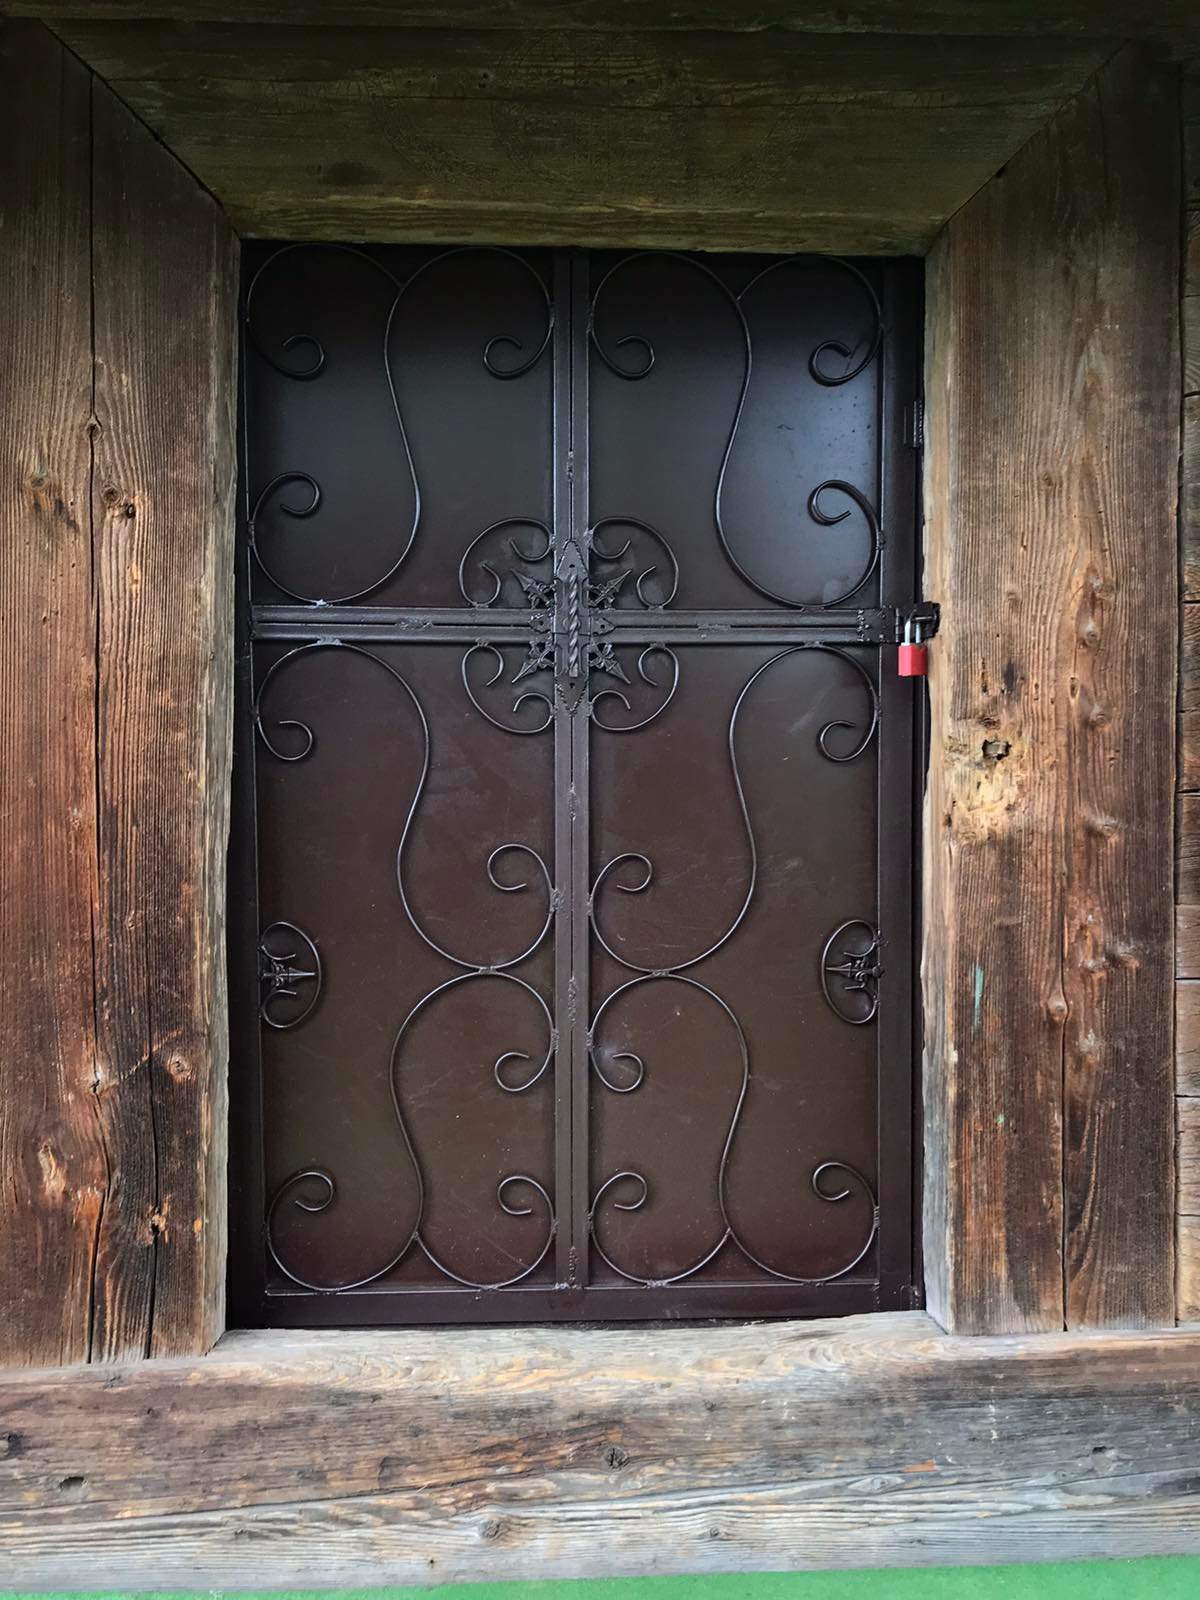 Автентичні дерев’яні двері дзвіниці Струківської церкви самовільно замінили на нові, металеві - фото 82011